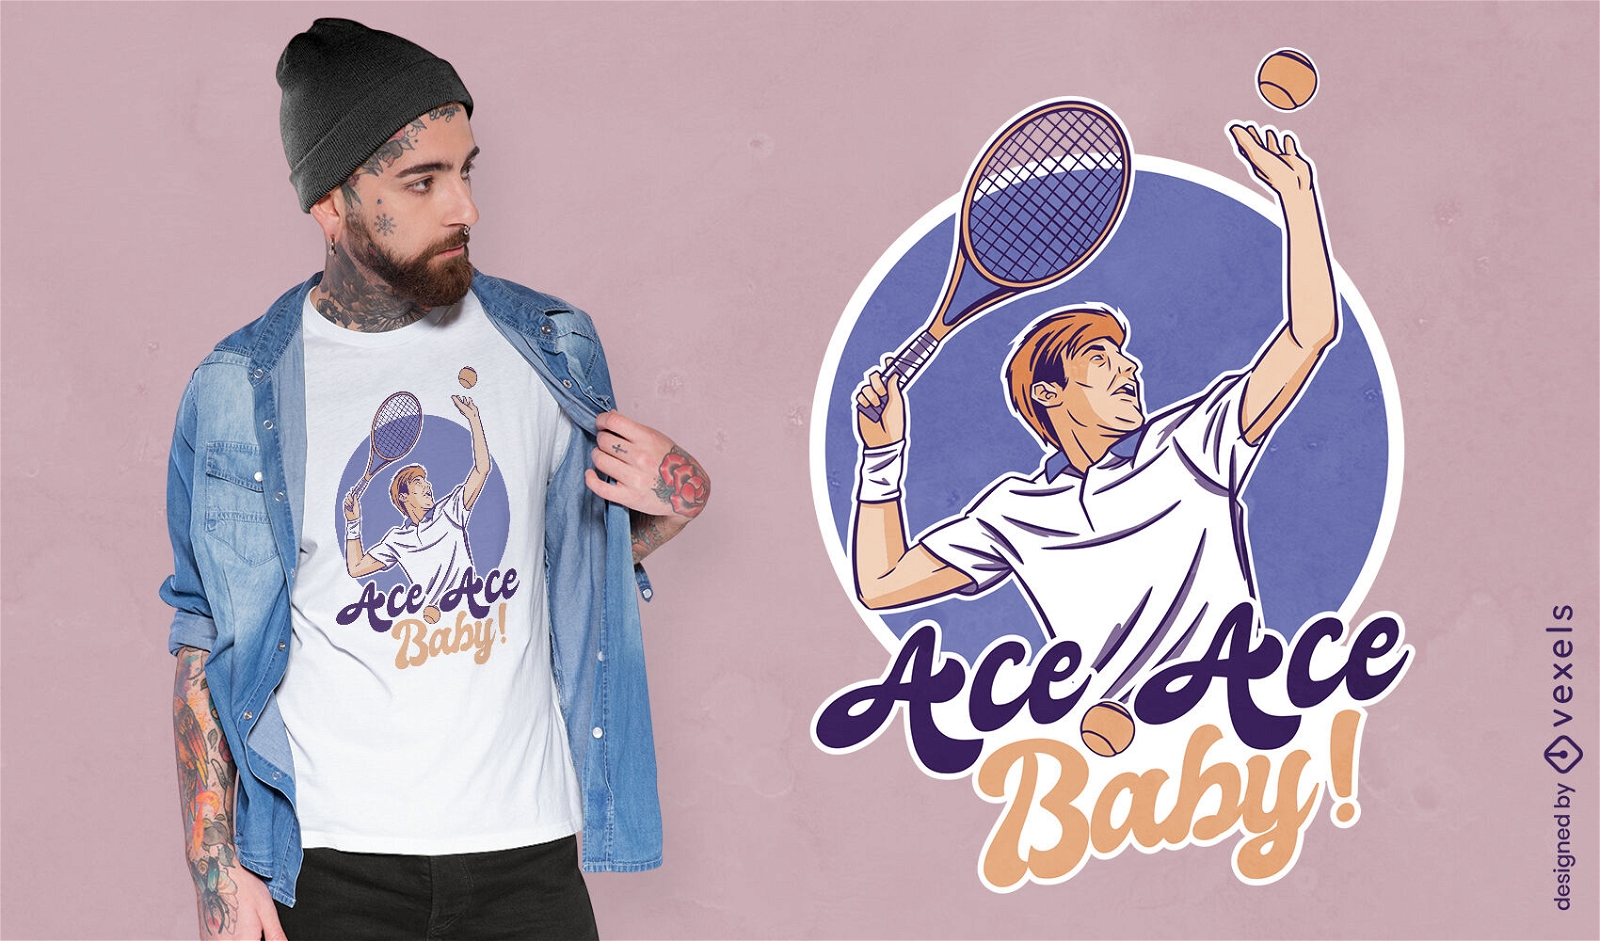 Diseño de camiseta deportiva de jugador de tenis.